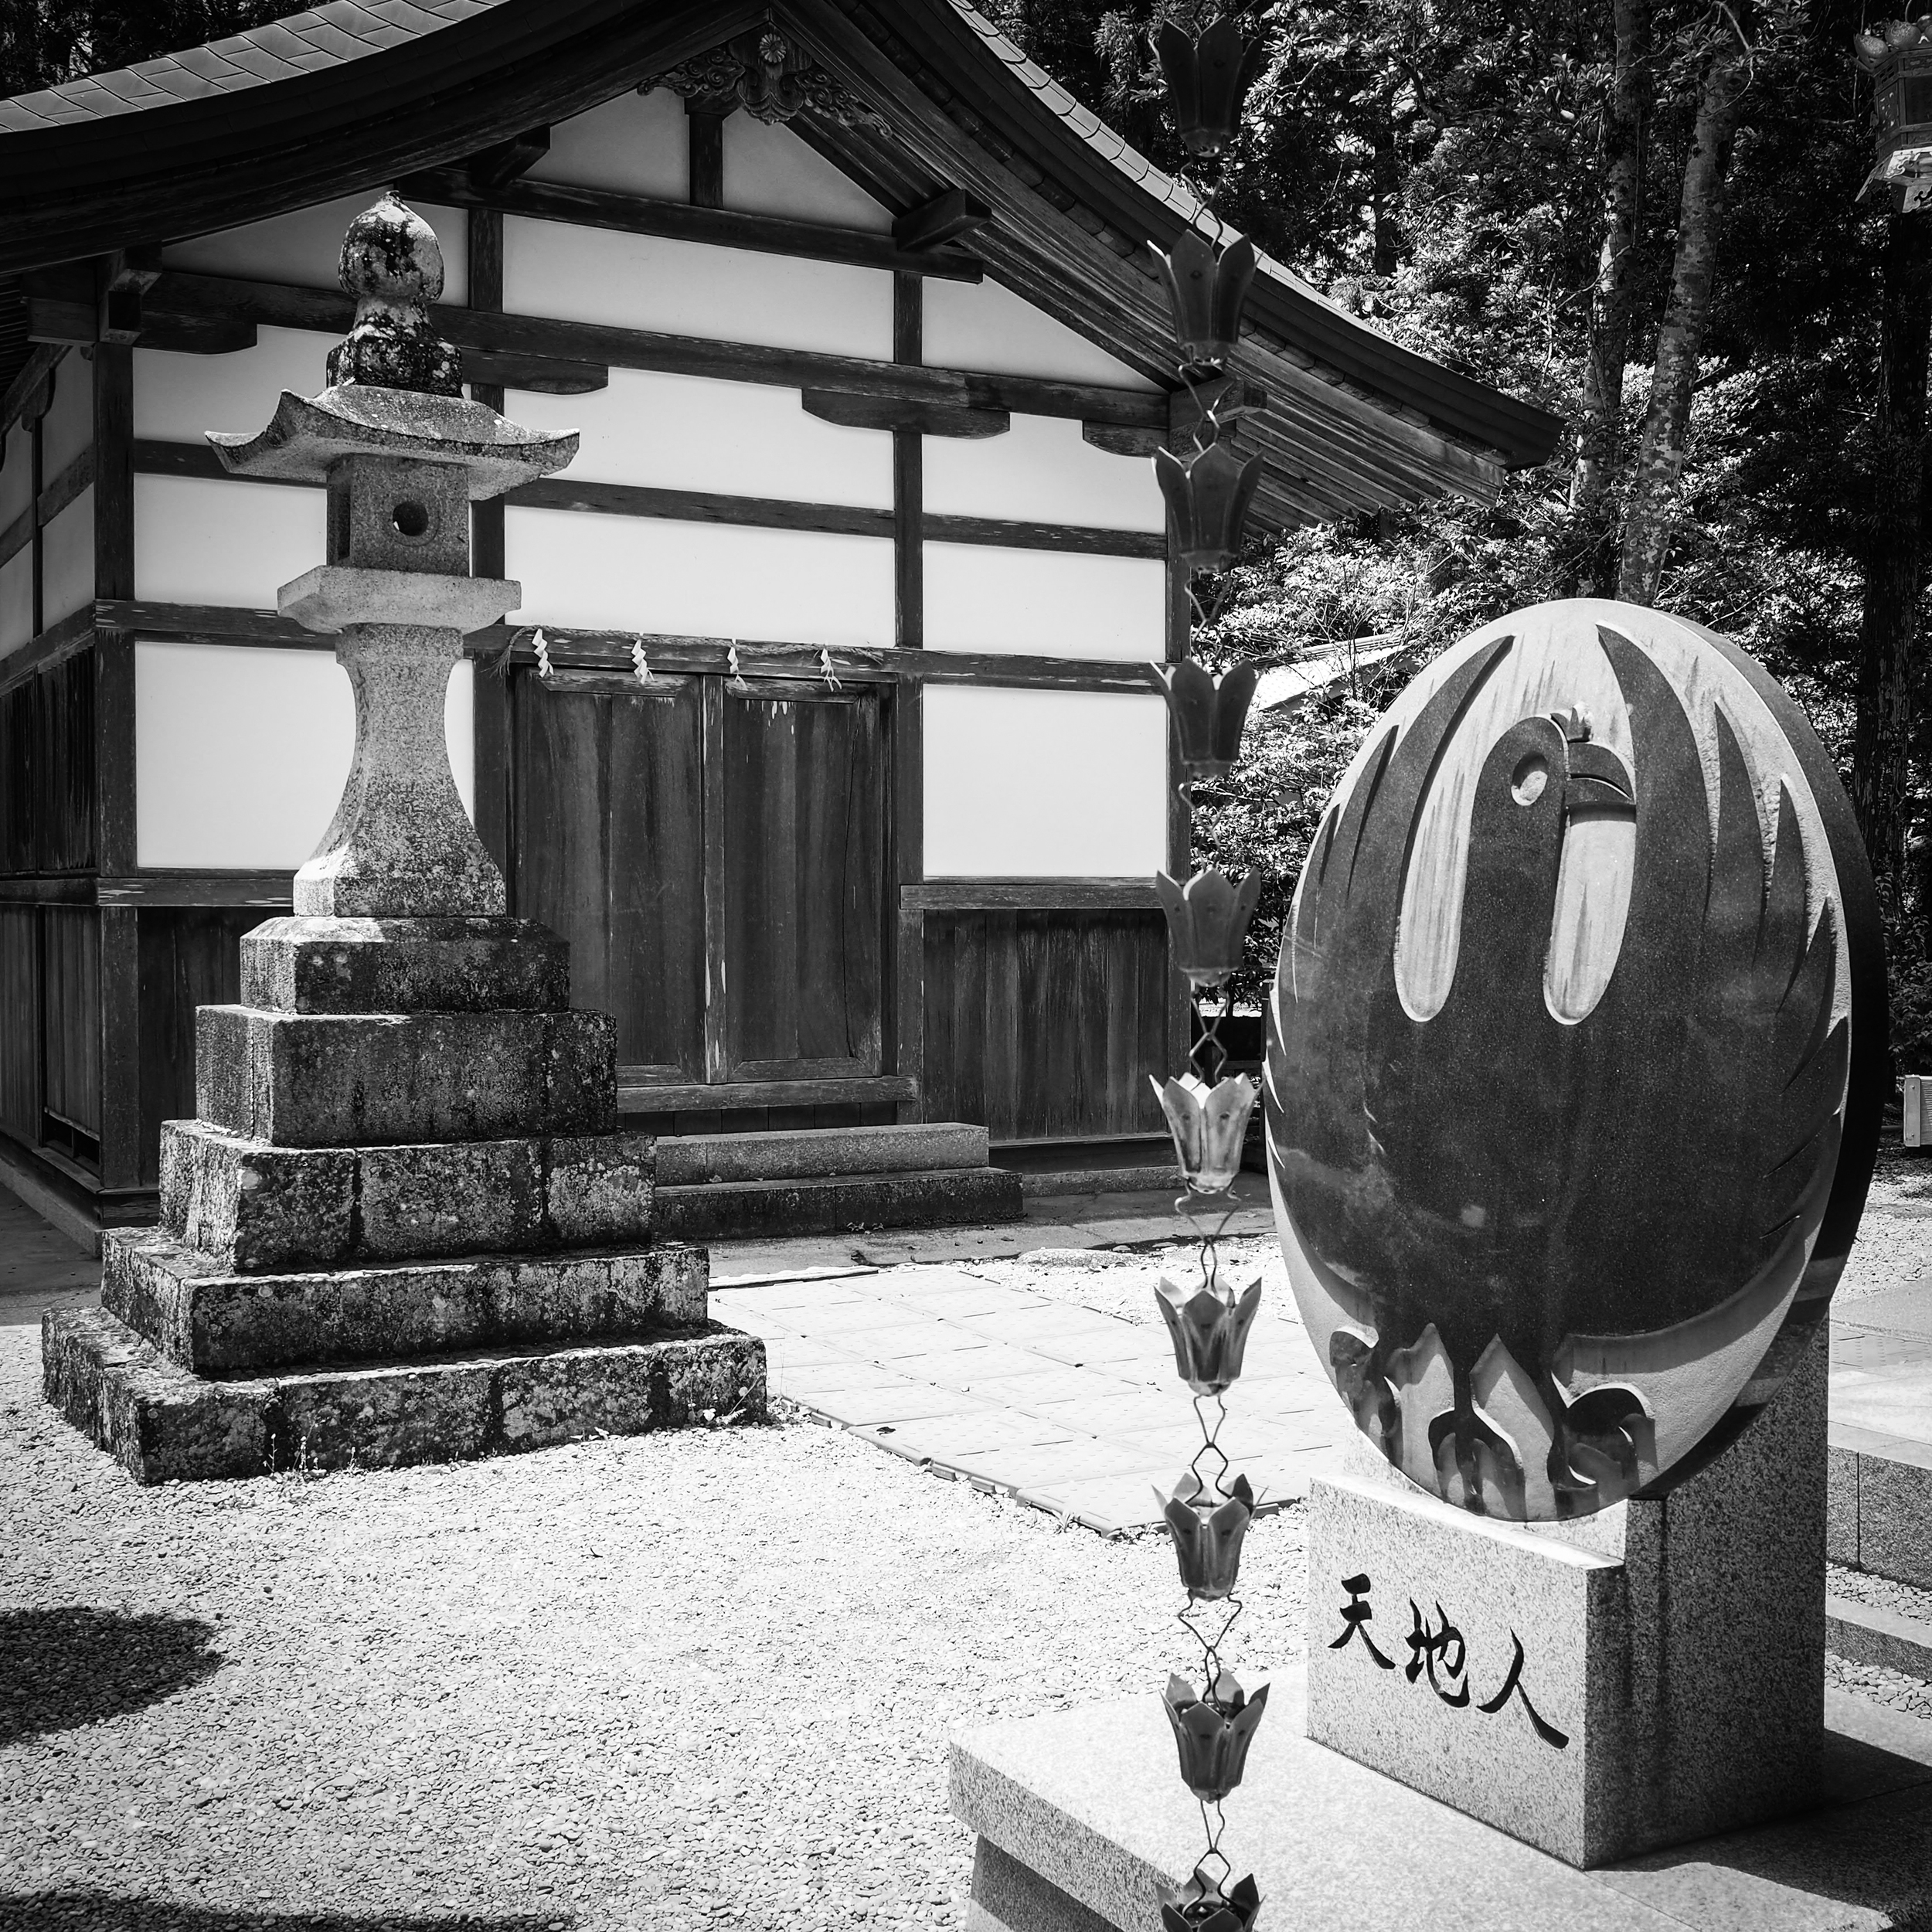 Kumano Kodo emblem at the Hongu Taisha Shrine